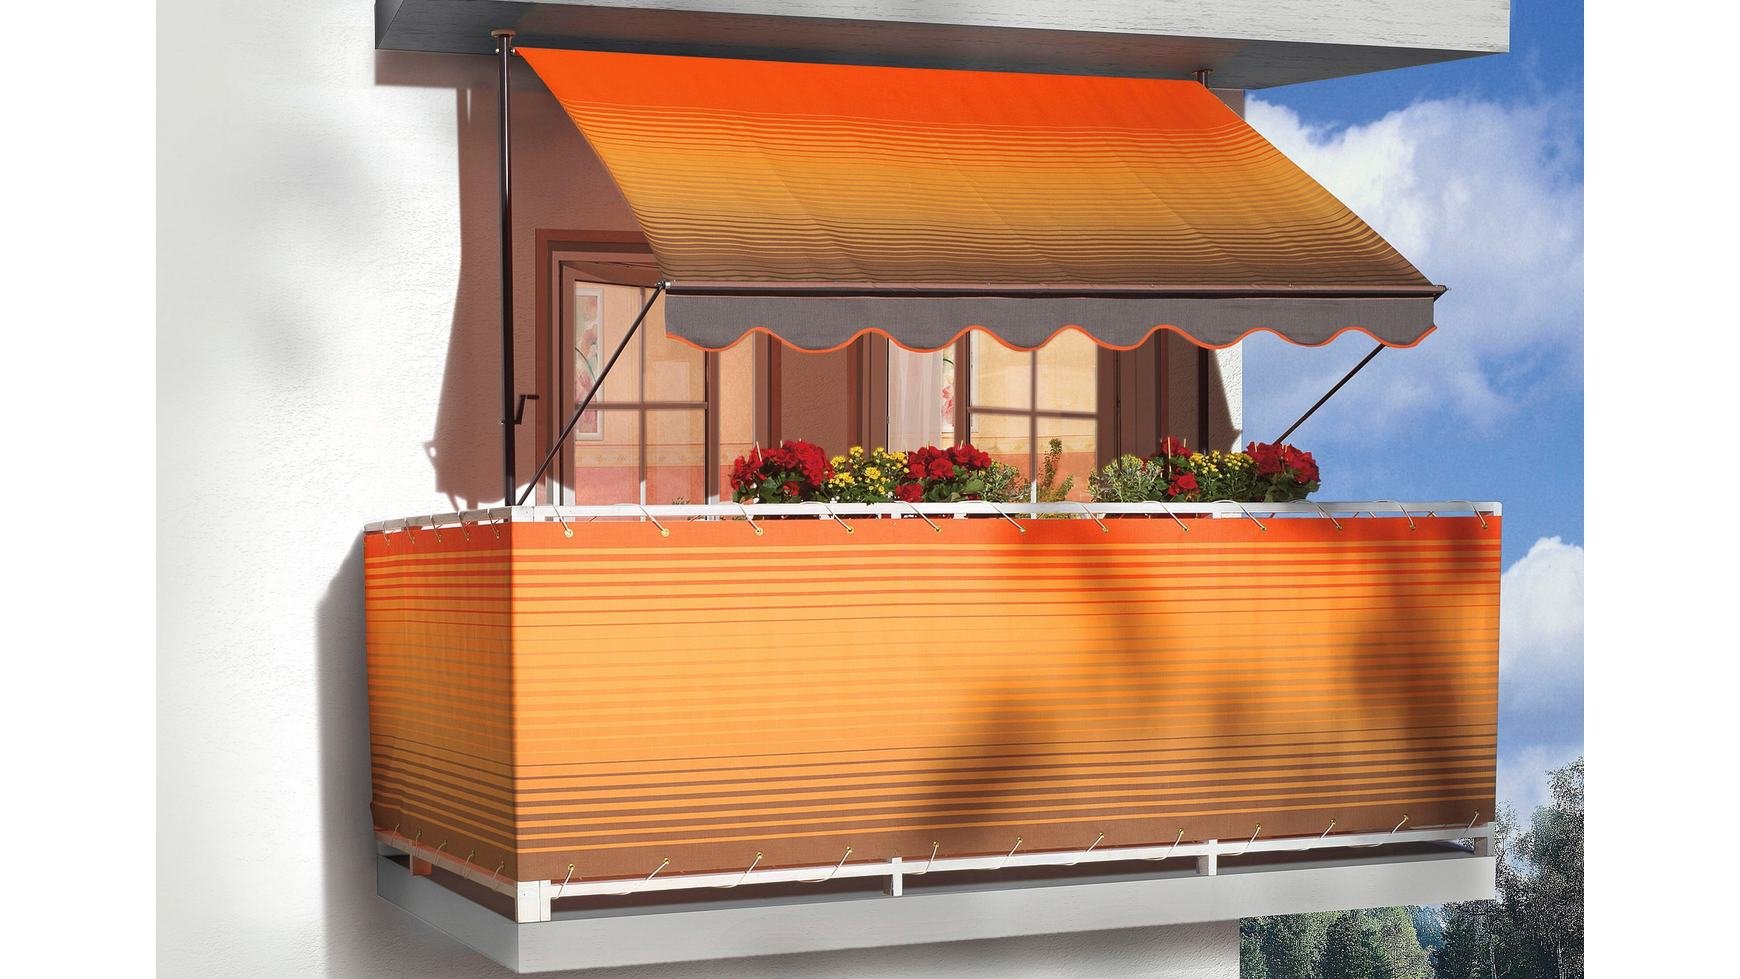 Angerer Klemmmarkise Exklusiv - Markise für Sonnenschutz - Montage ohne Bohren und Dübeln - ideale Balkonmarkise für Mietwohnungen (400 cm, Orange-Braun Ombré)